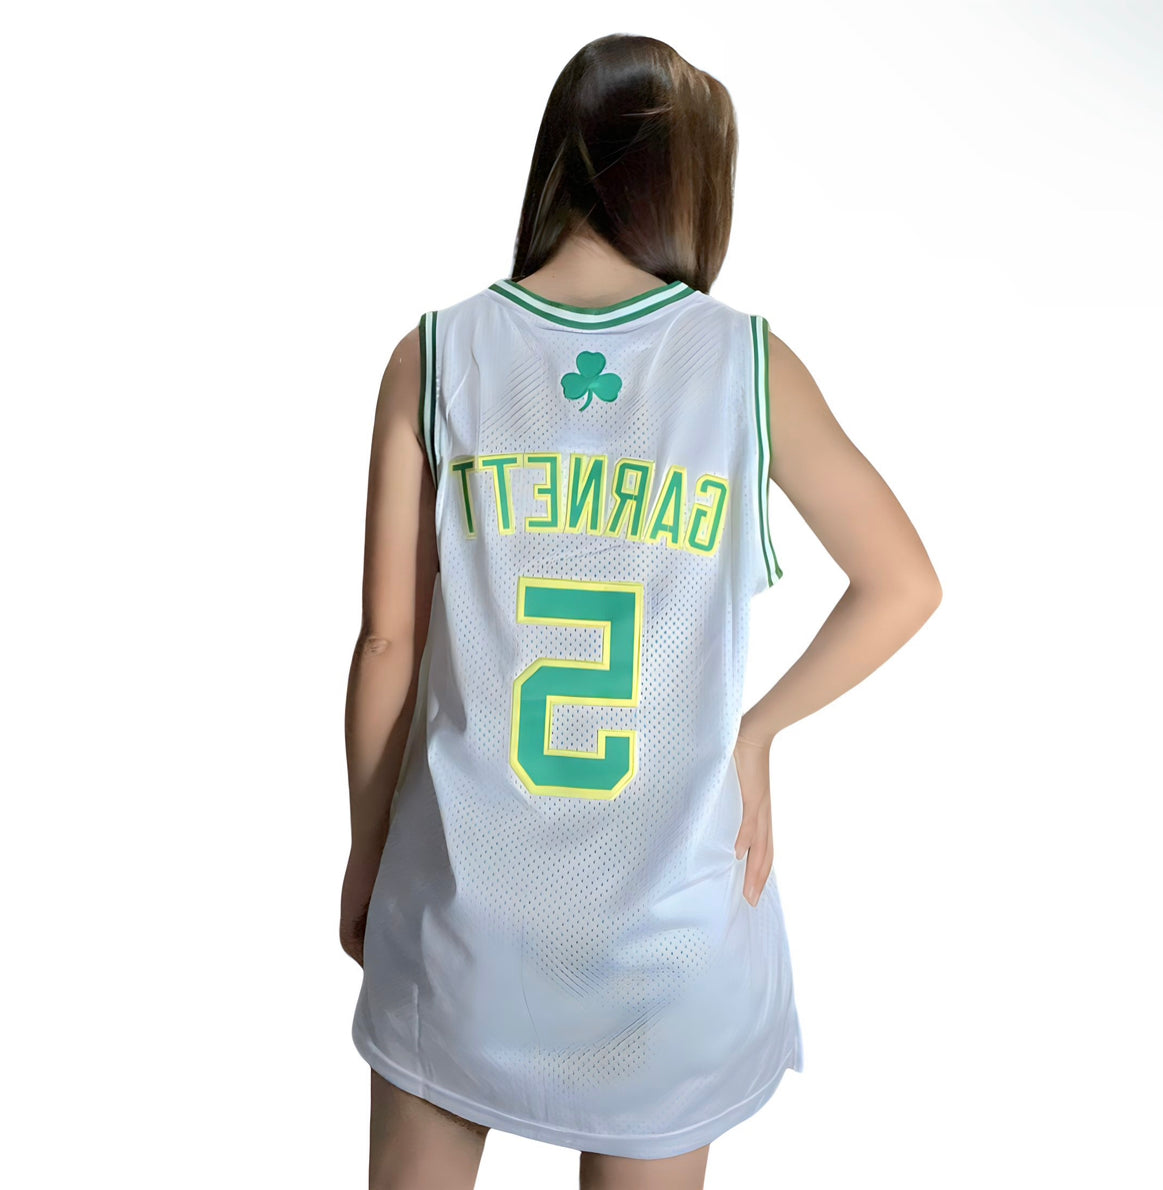 Celtics jersey – Kingz streetwear